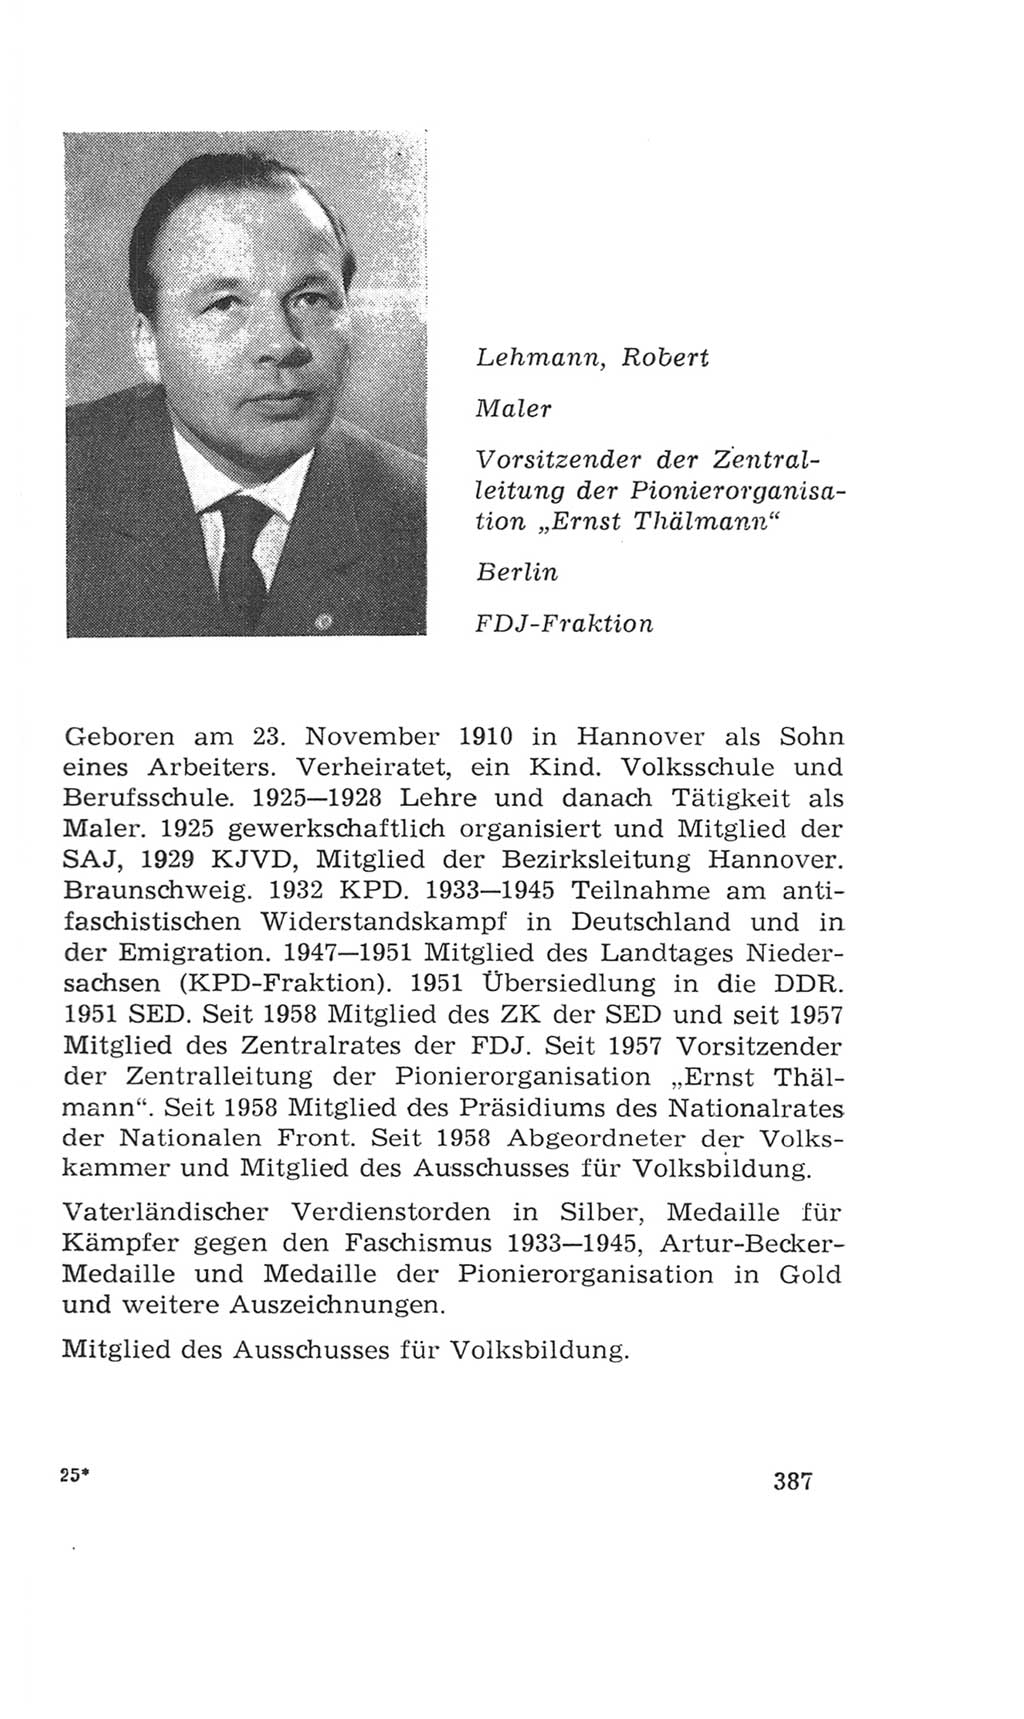 Volkskammer (VK) der Deutschen Demokratischen Republik (DDR), 4. Wahlperiode 1963-1967, Seite 387 (VK. DDR 4. WP. 1963-1967, S. 387)